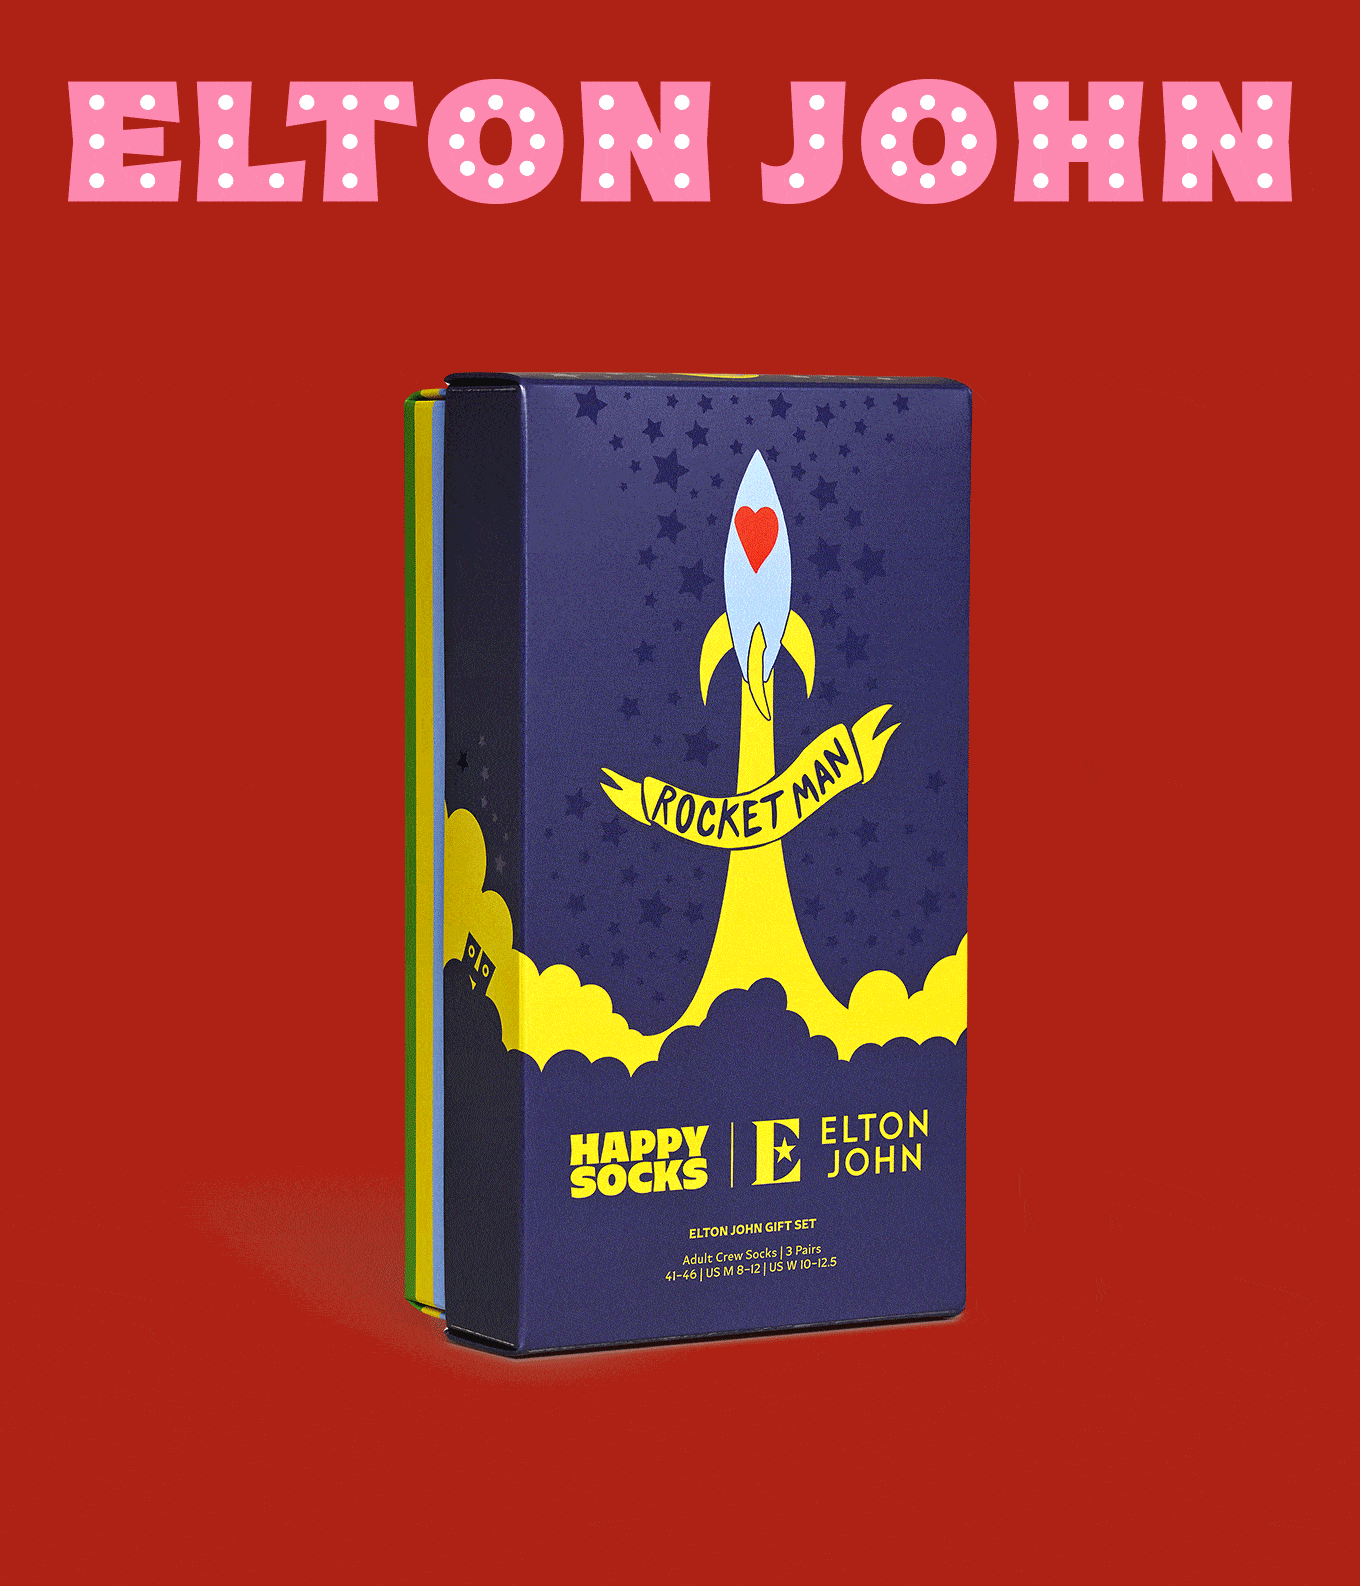 Elton John 3-Pack Gift Set